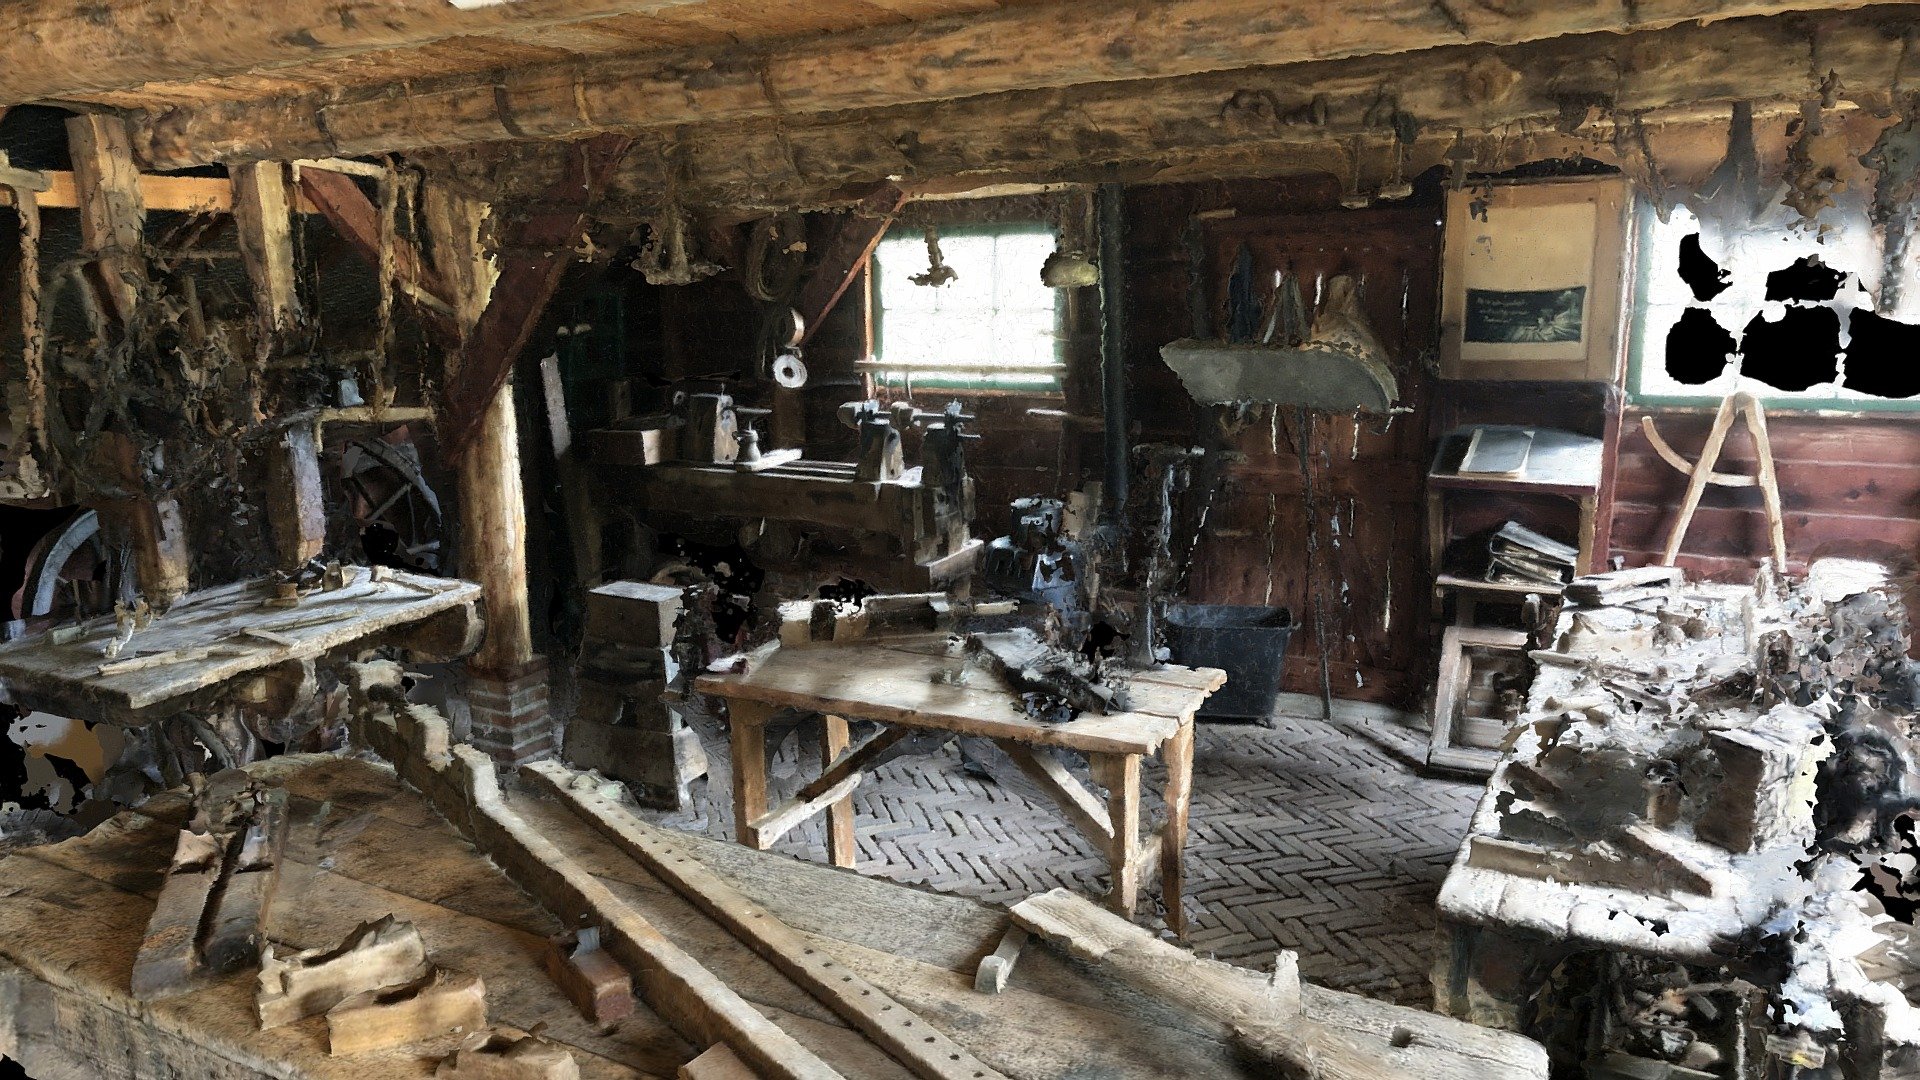 Carpenter's Workshop